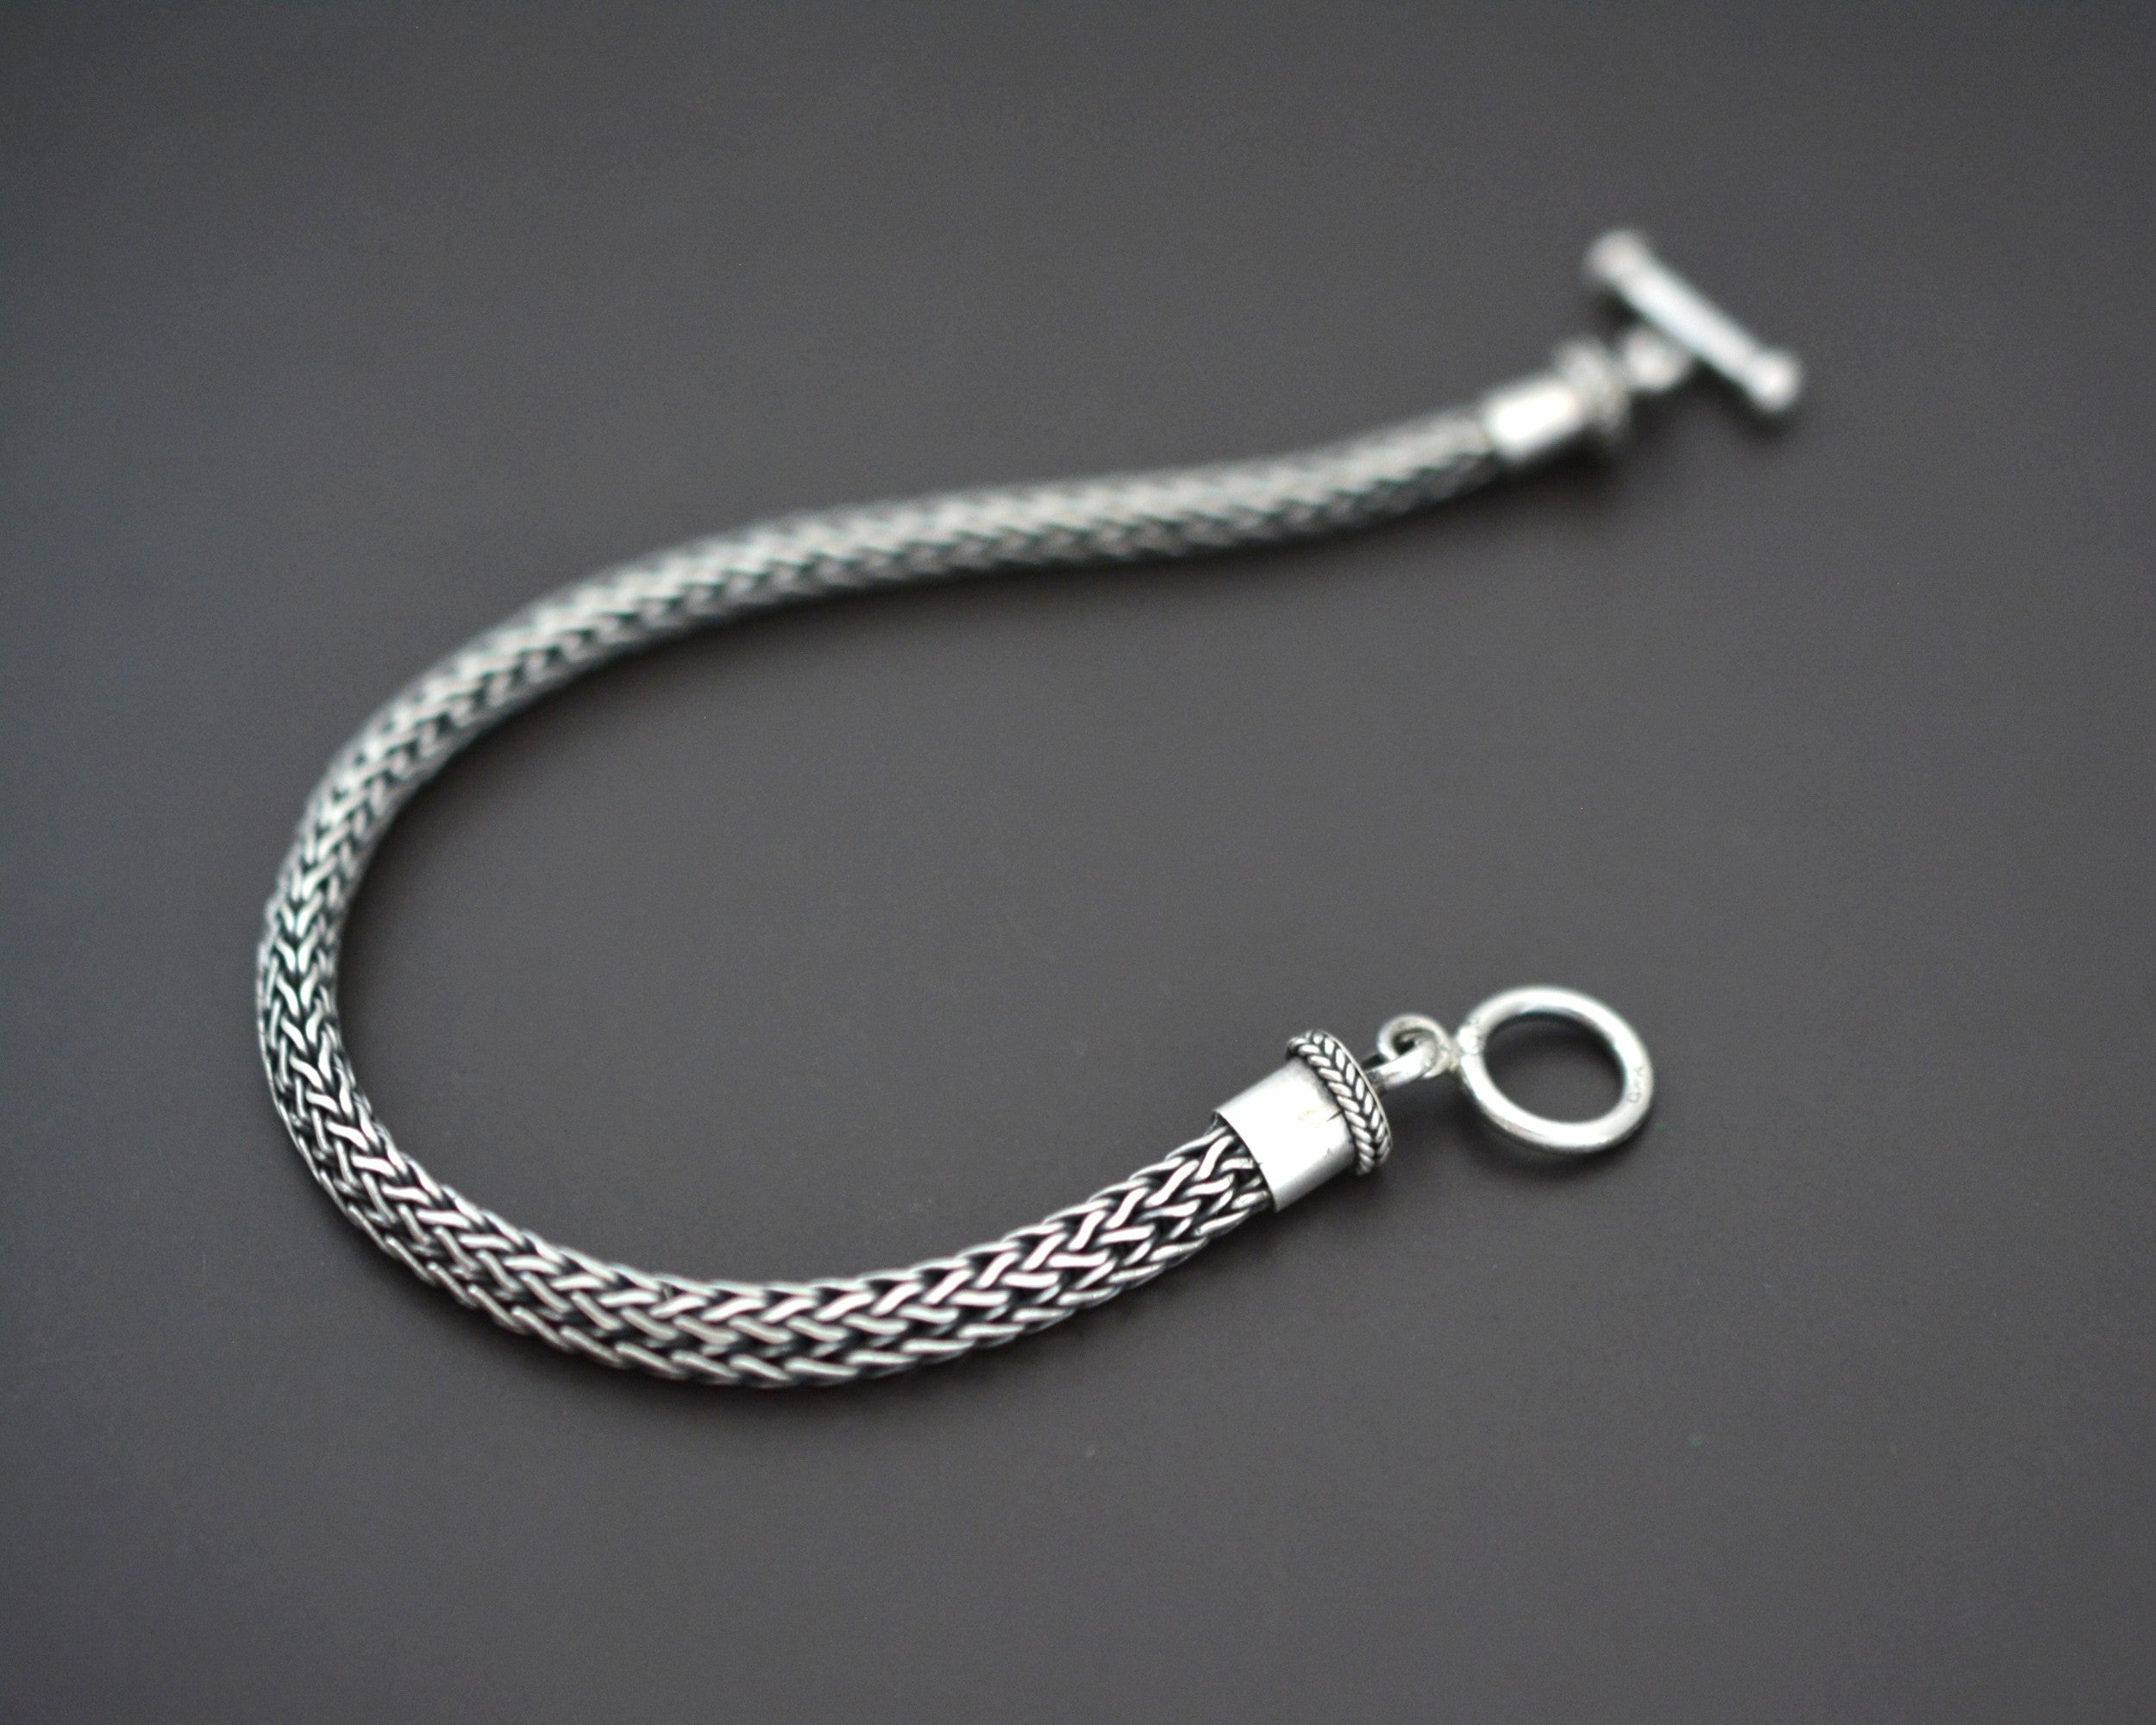 Ethnic Woven Silver Snake Chain Bracelet